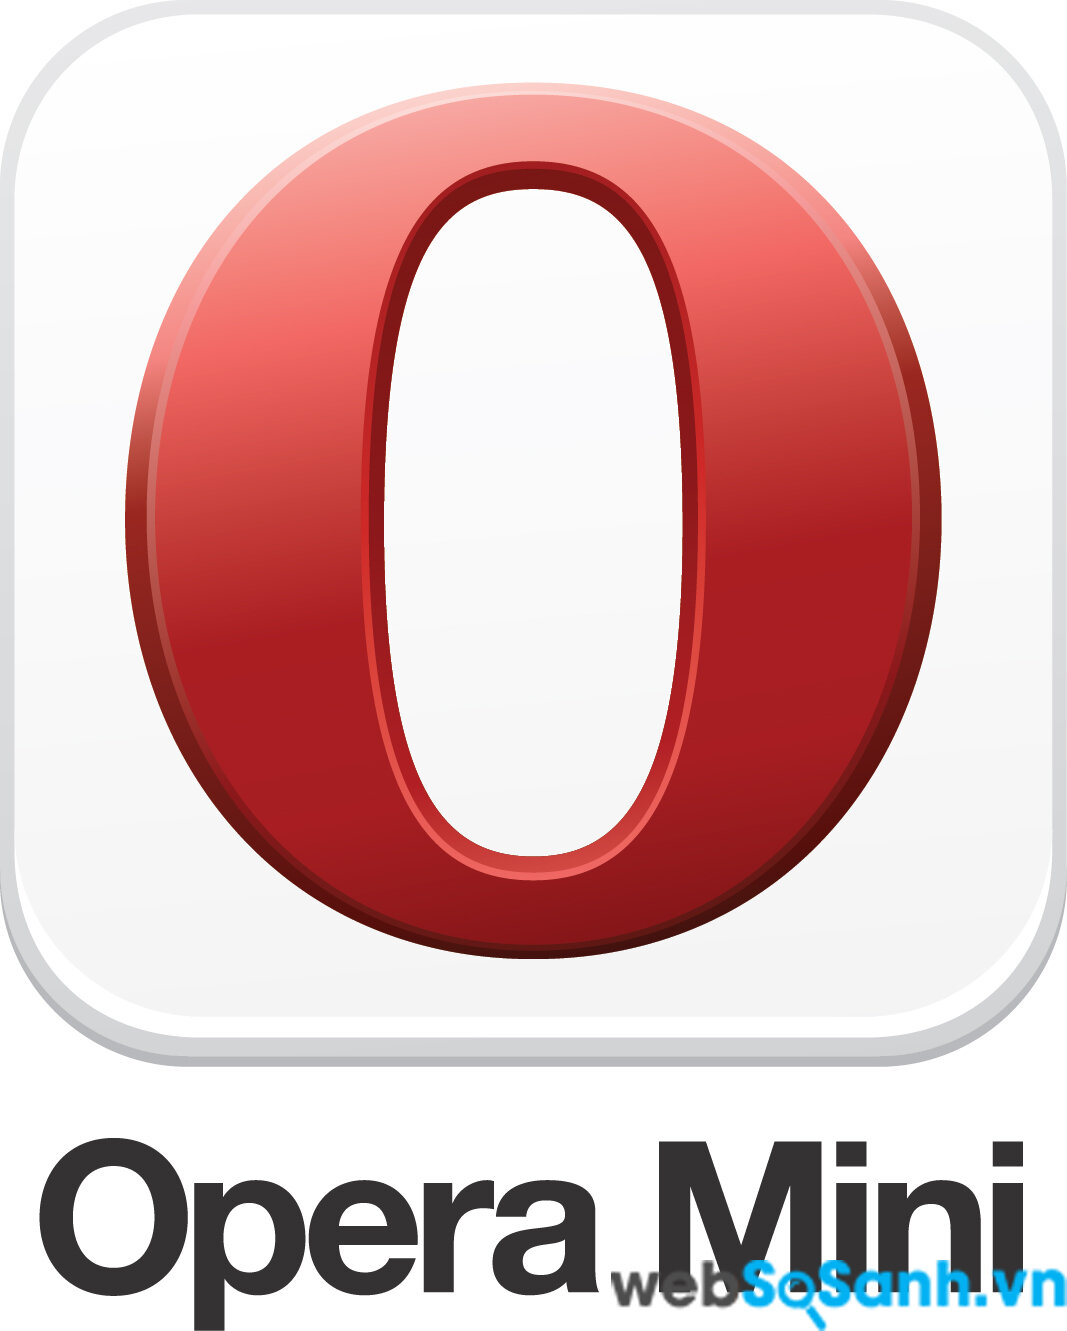 Nên lựa chọn trình duyệt Opera Mini để truy cập internet cho tiết kiệm